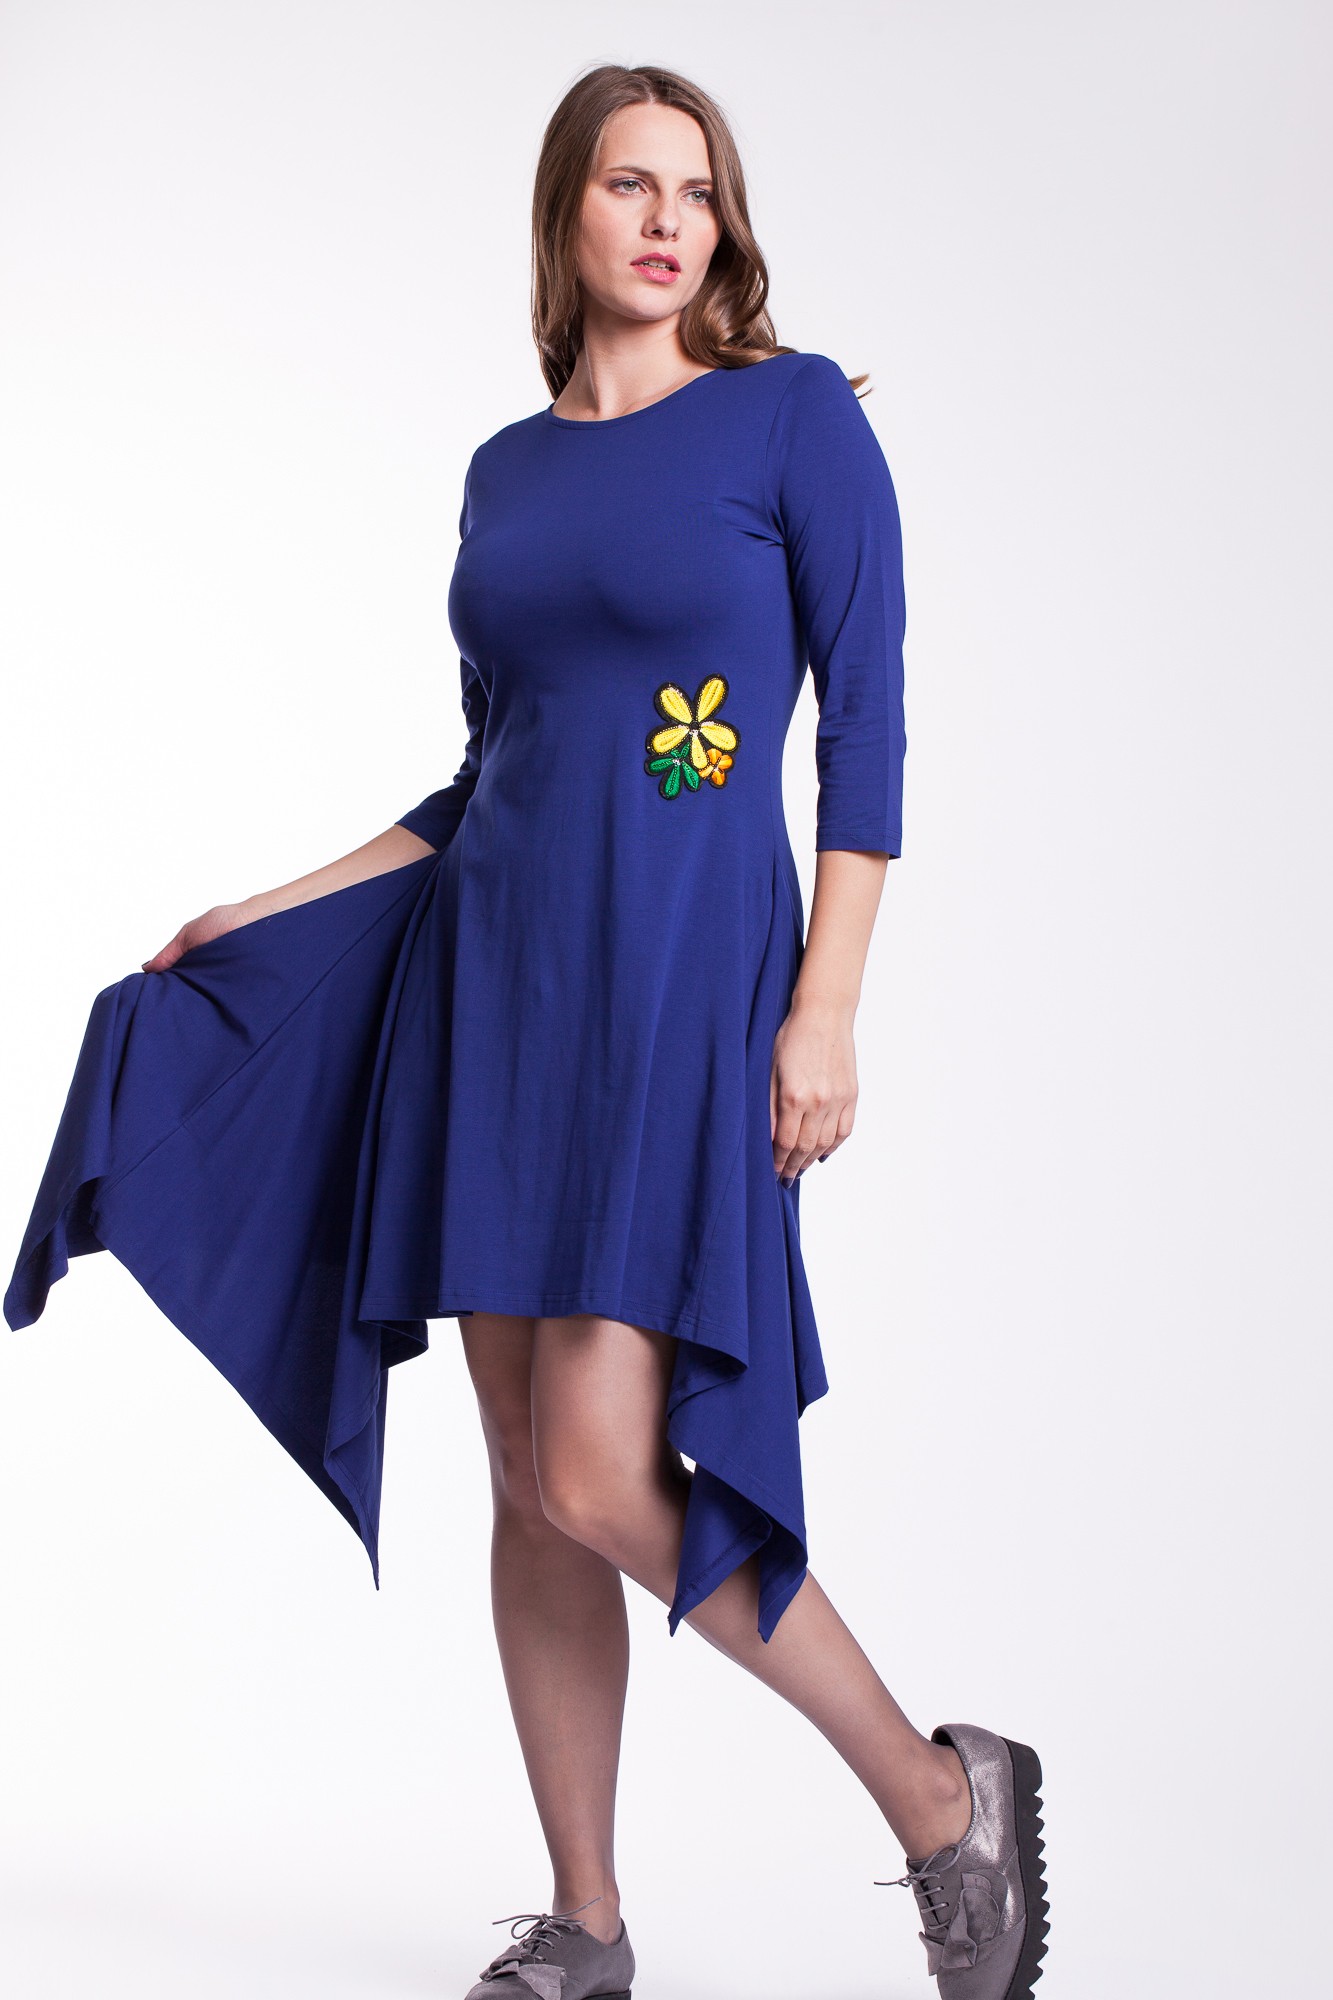 Rochie albastra asimetrica cu floare aplicata